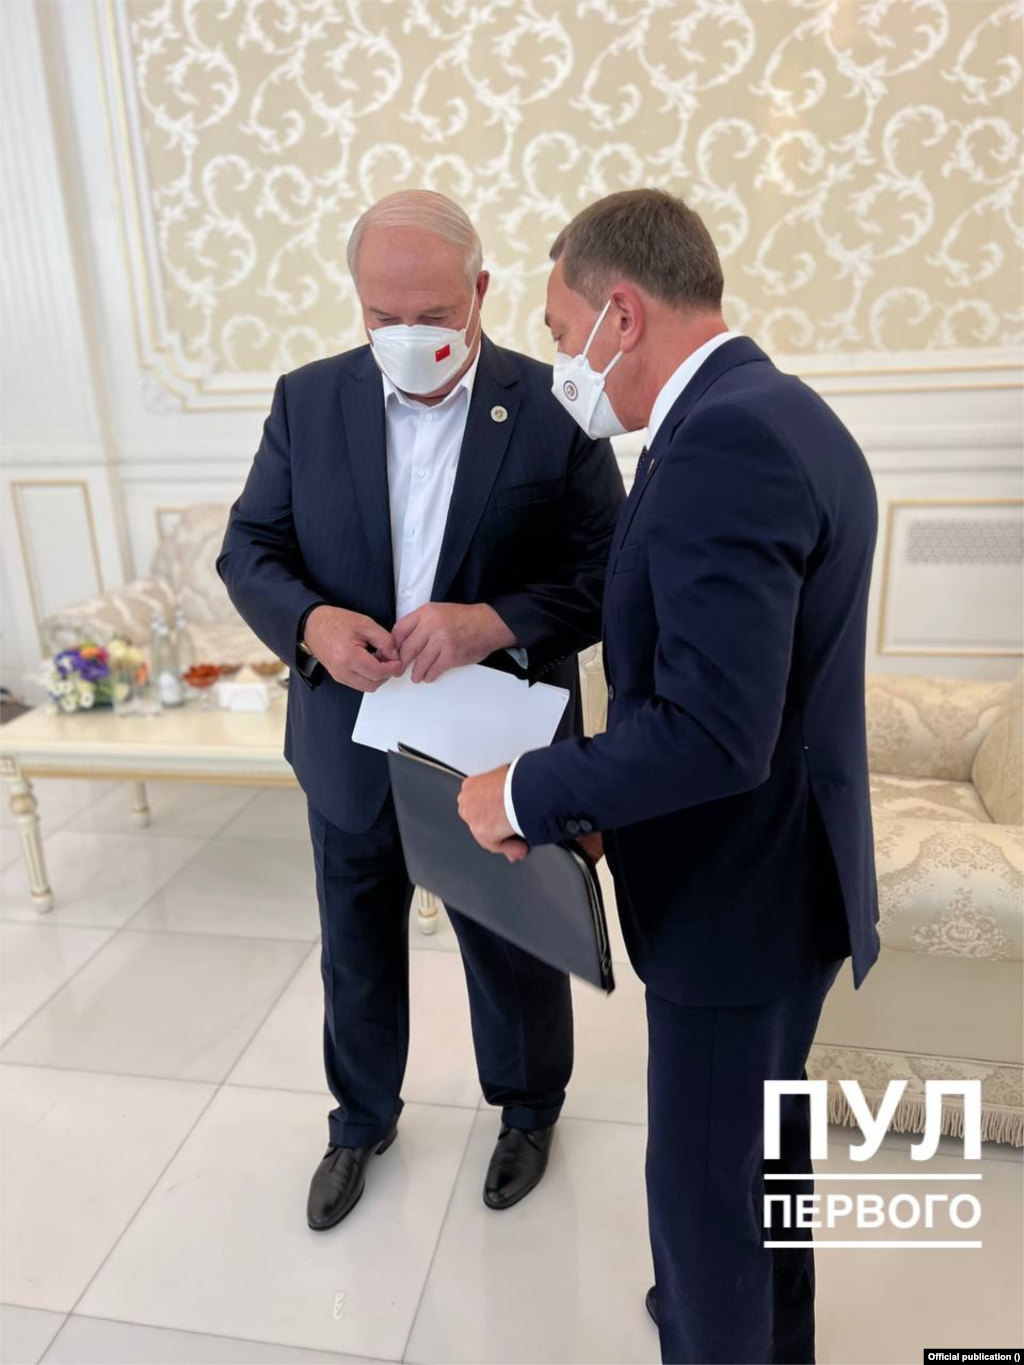 Перад сустрэчай з кітайскім лідэрам Лукашэнку прымусілі надзець маску. Прычым маска, якую ён надзеў, была з кітайскім сьцягам.